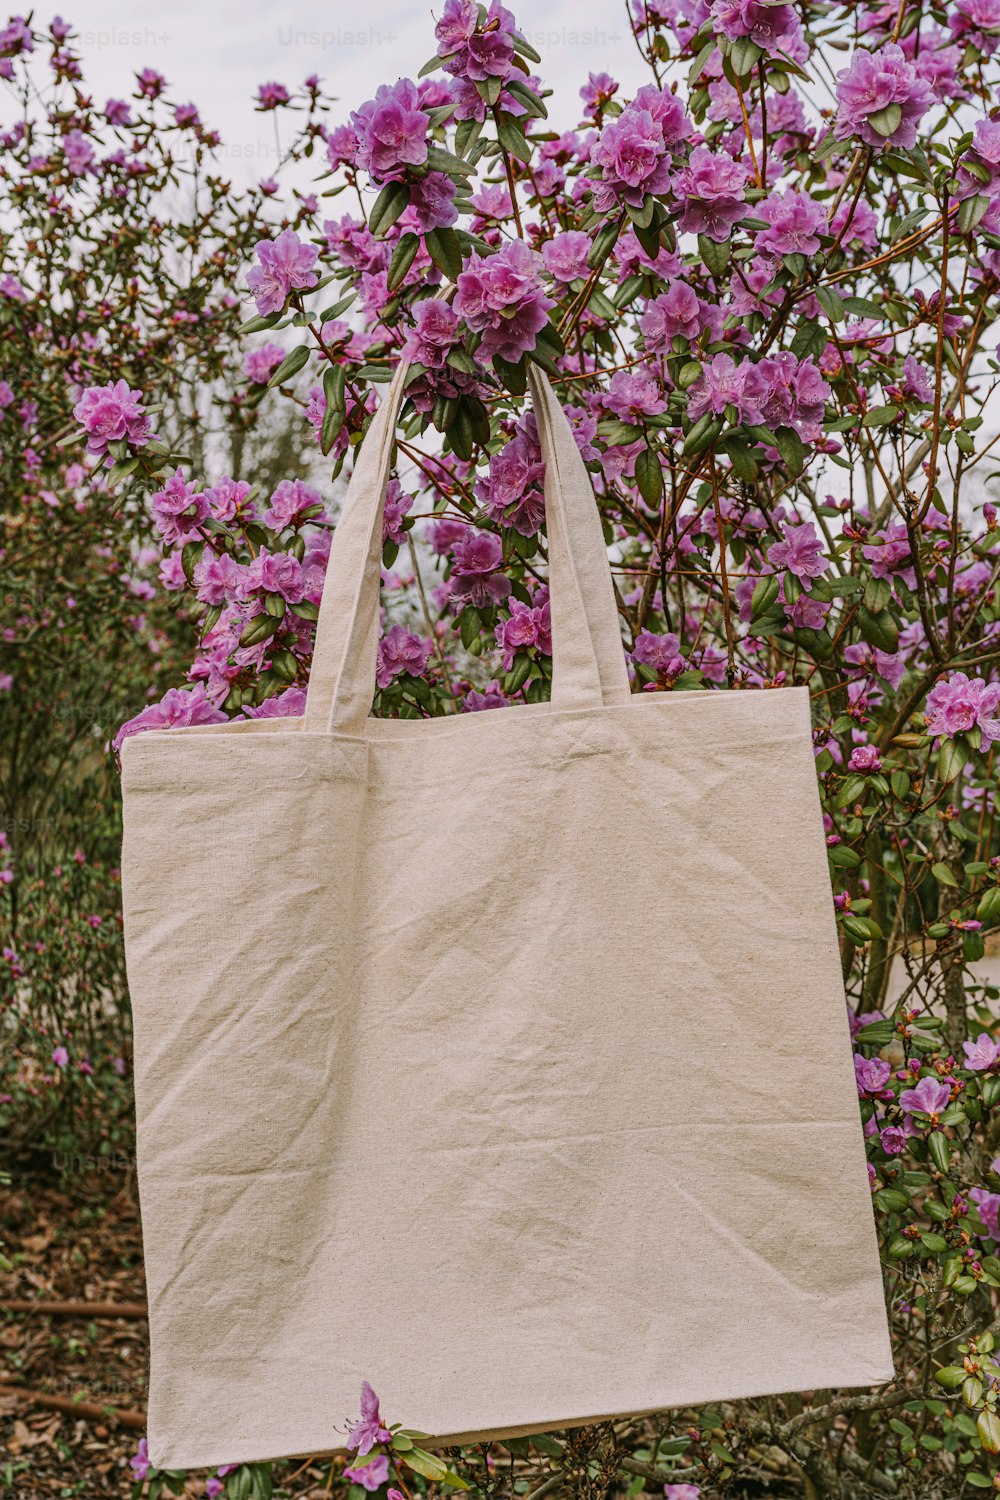 Eine weiße Tasche, die an einem Baum hängt, der mit lila Blumen gefüllt ist